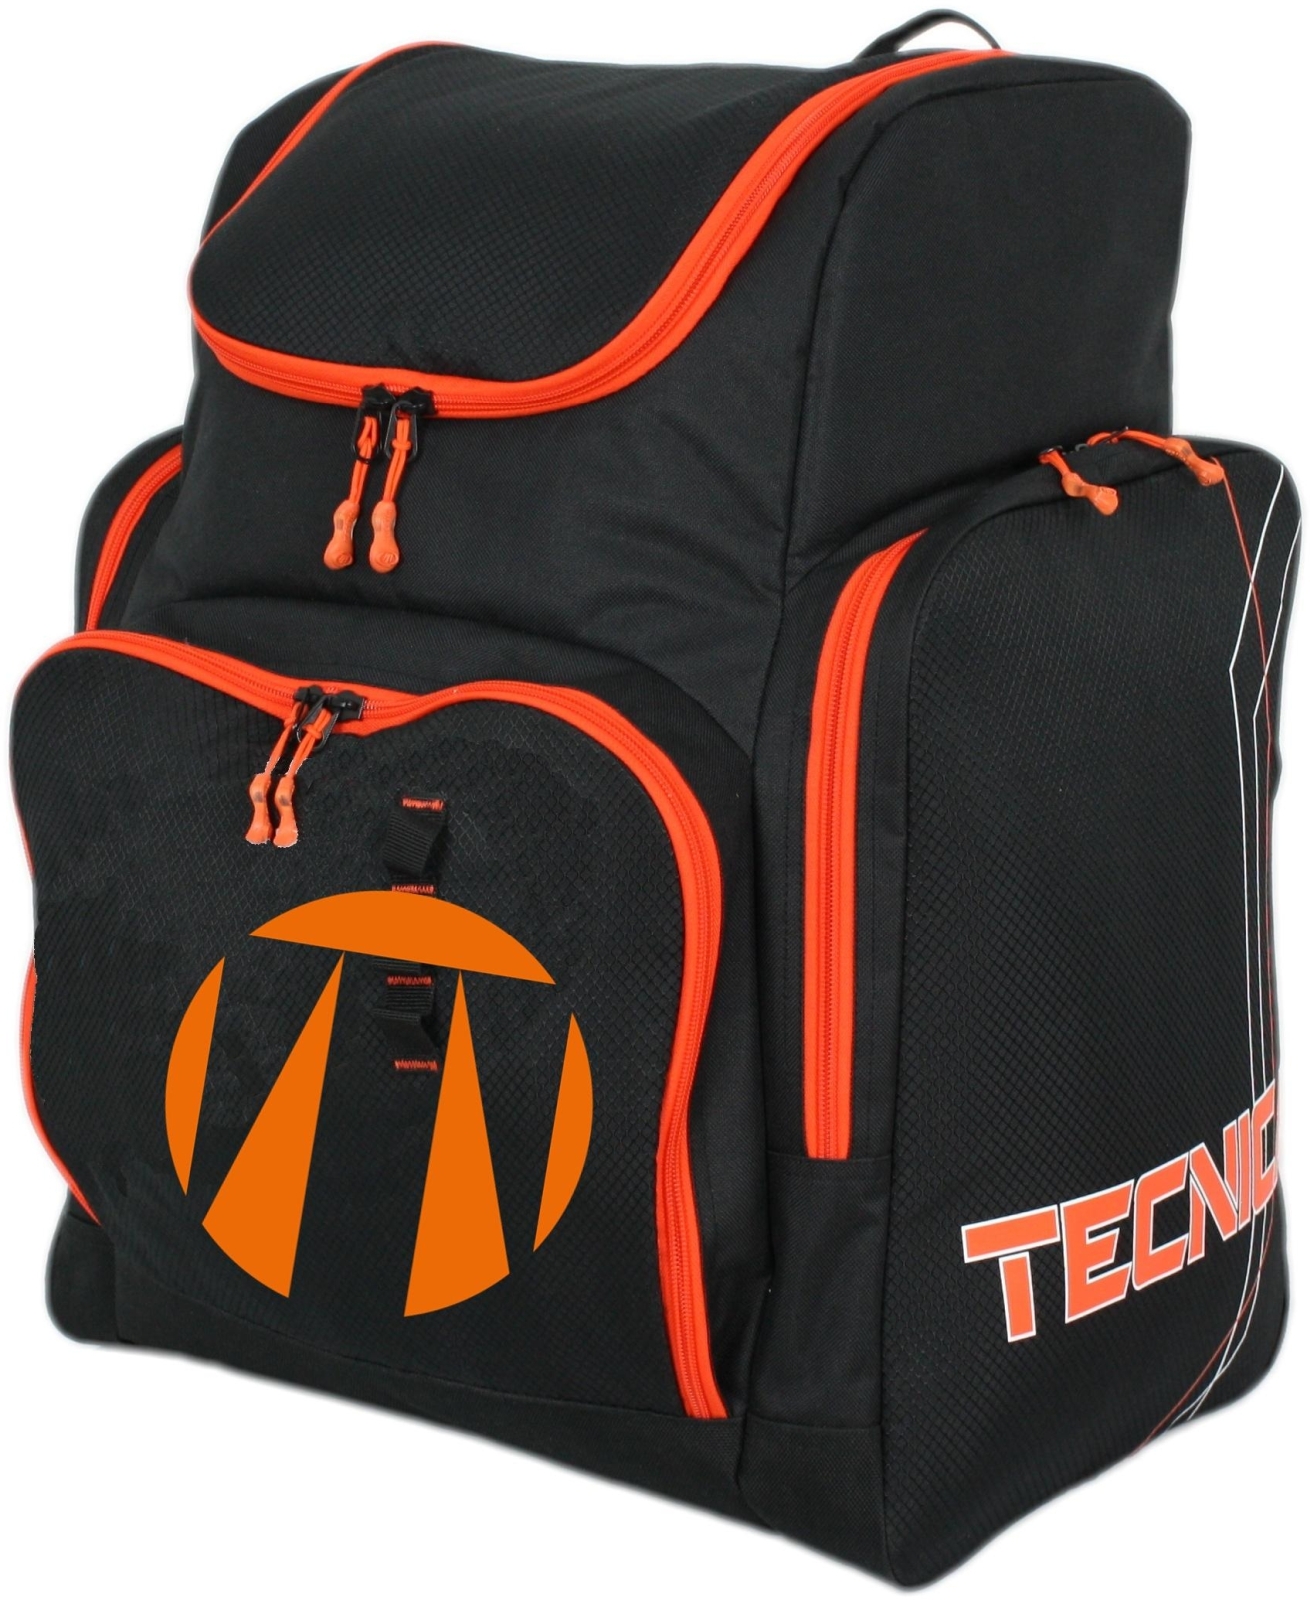 Levně Tecnica Family/Team
Skiboot backpack - black/orange uni